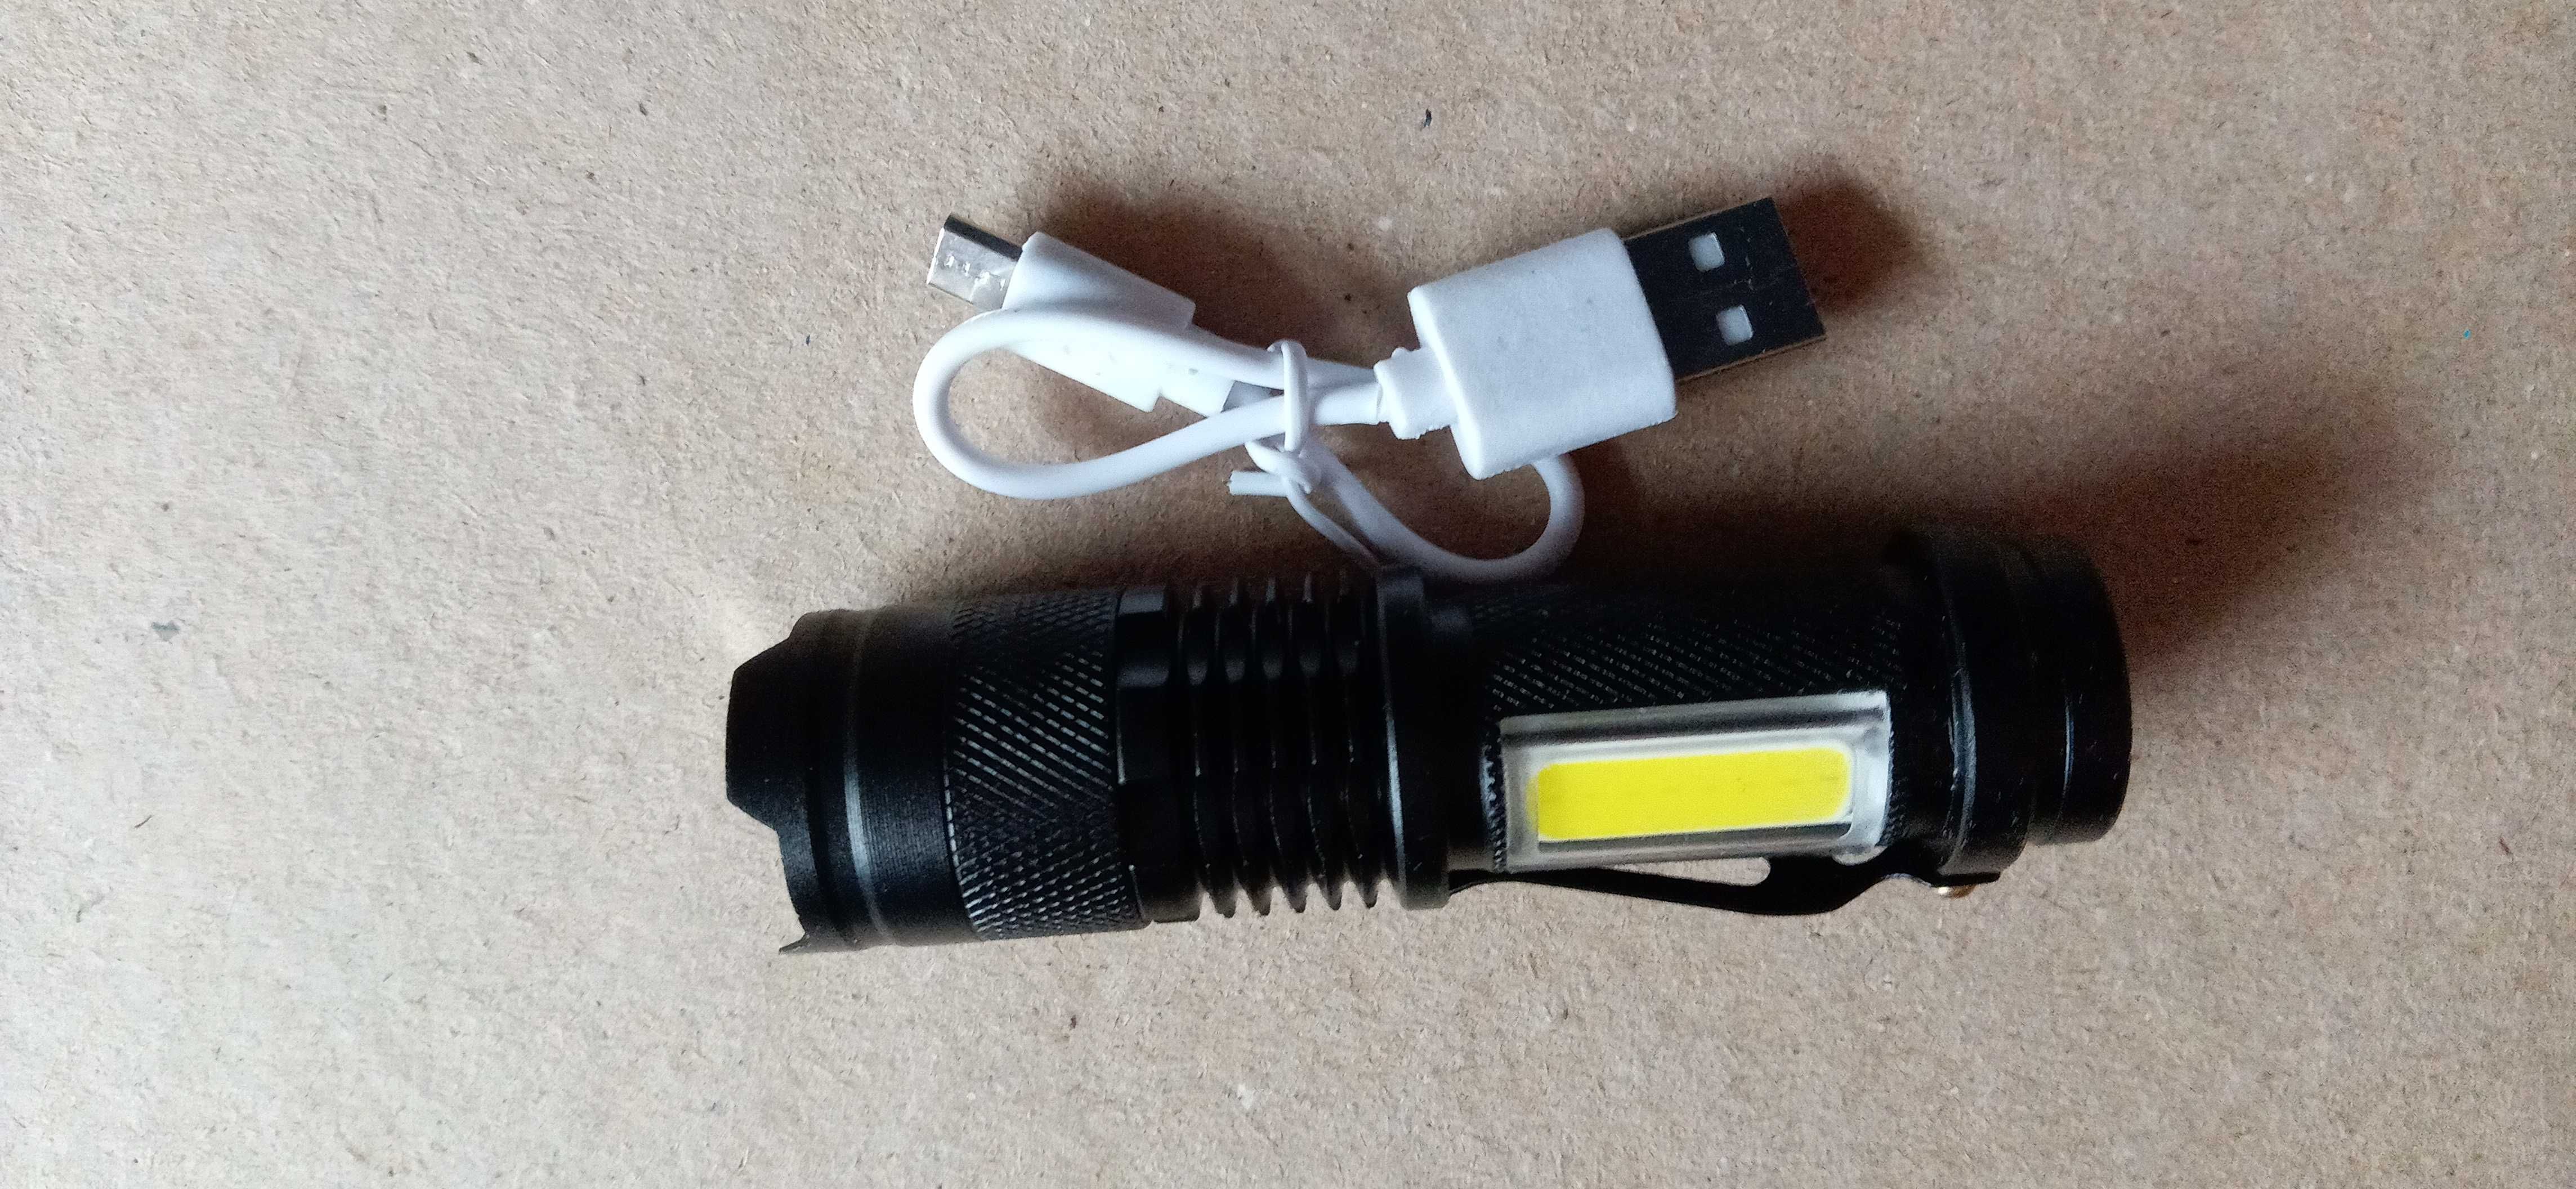 Ліхтар лампа ручний акумуляторний USB LED маленький